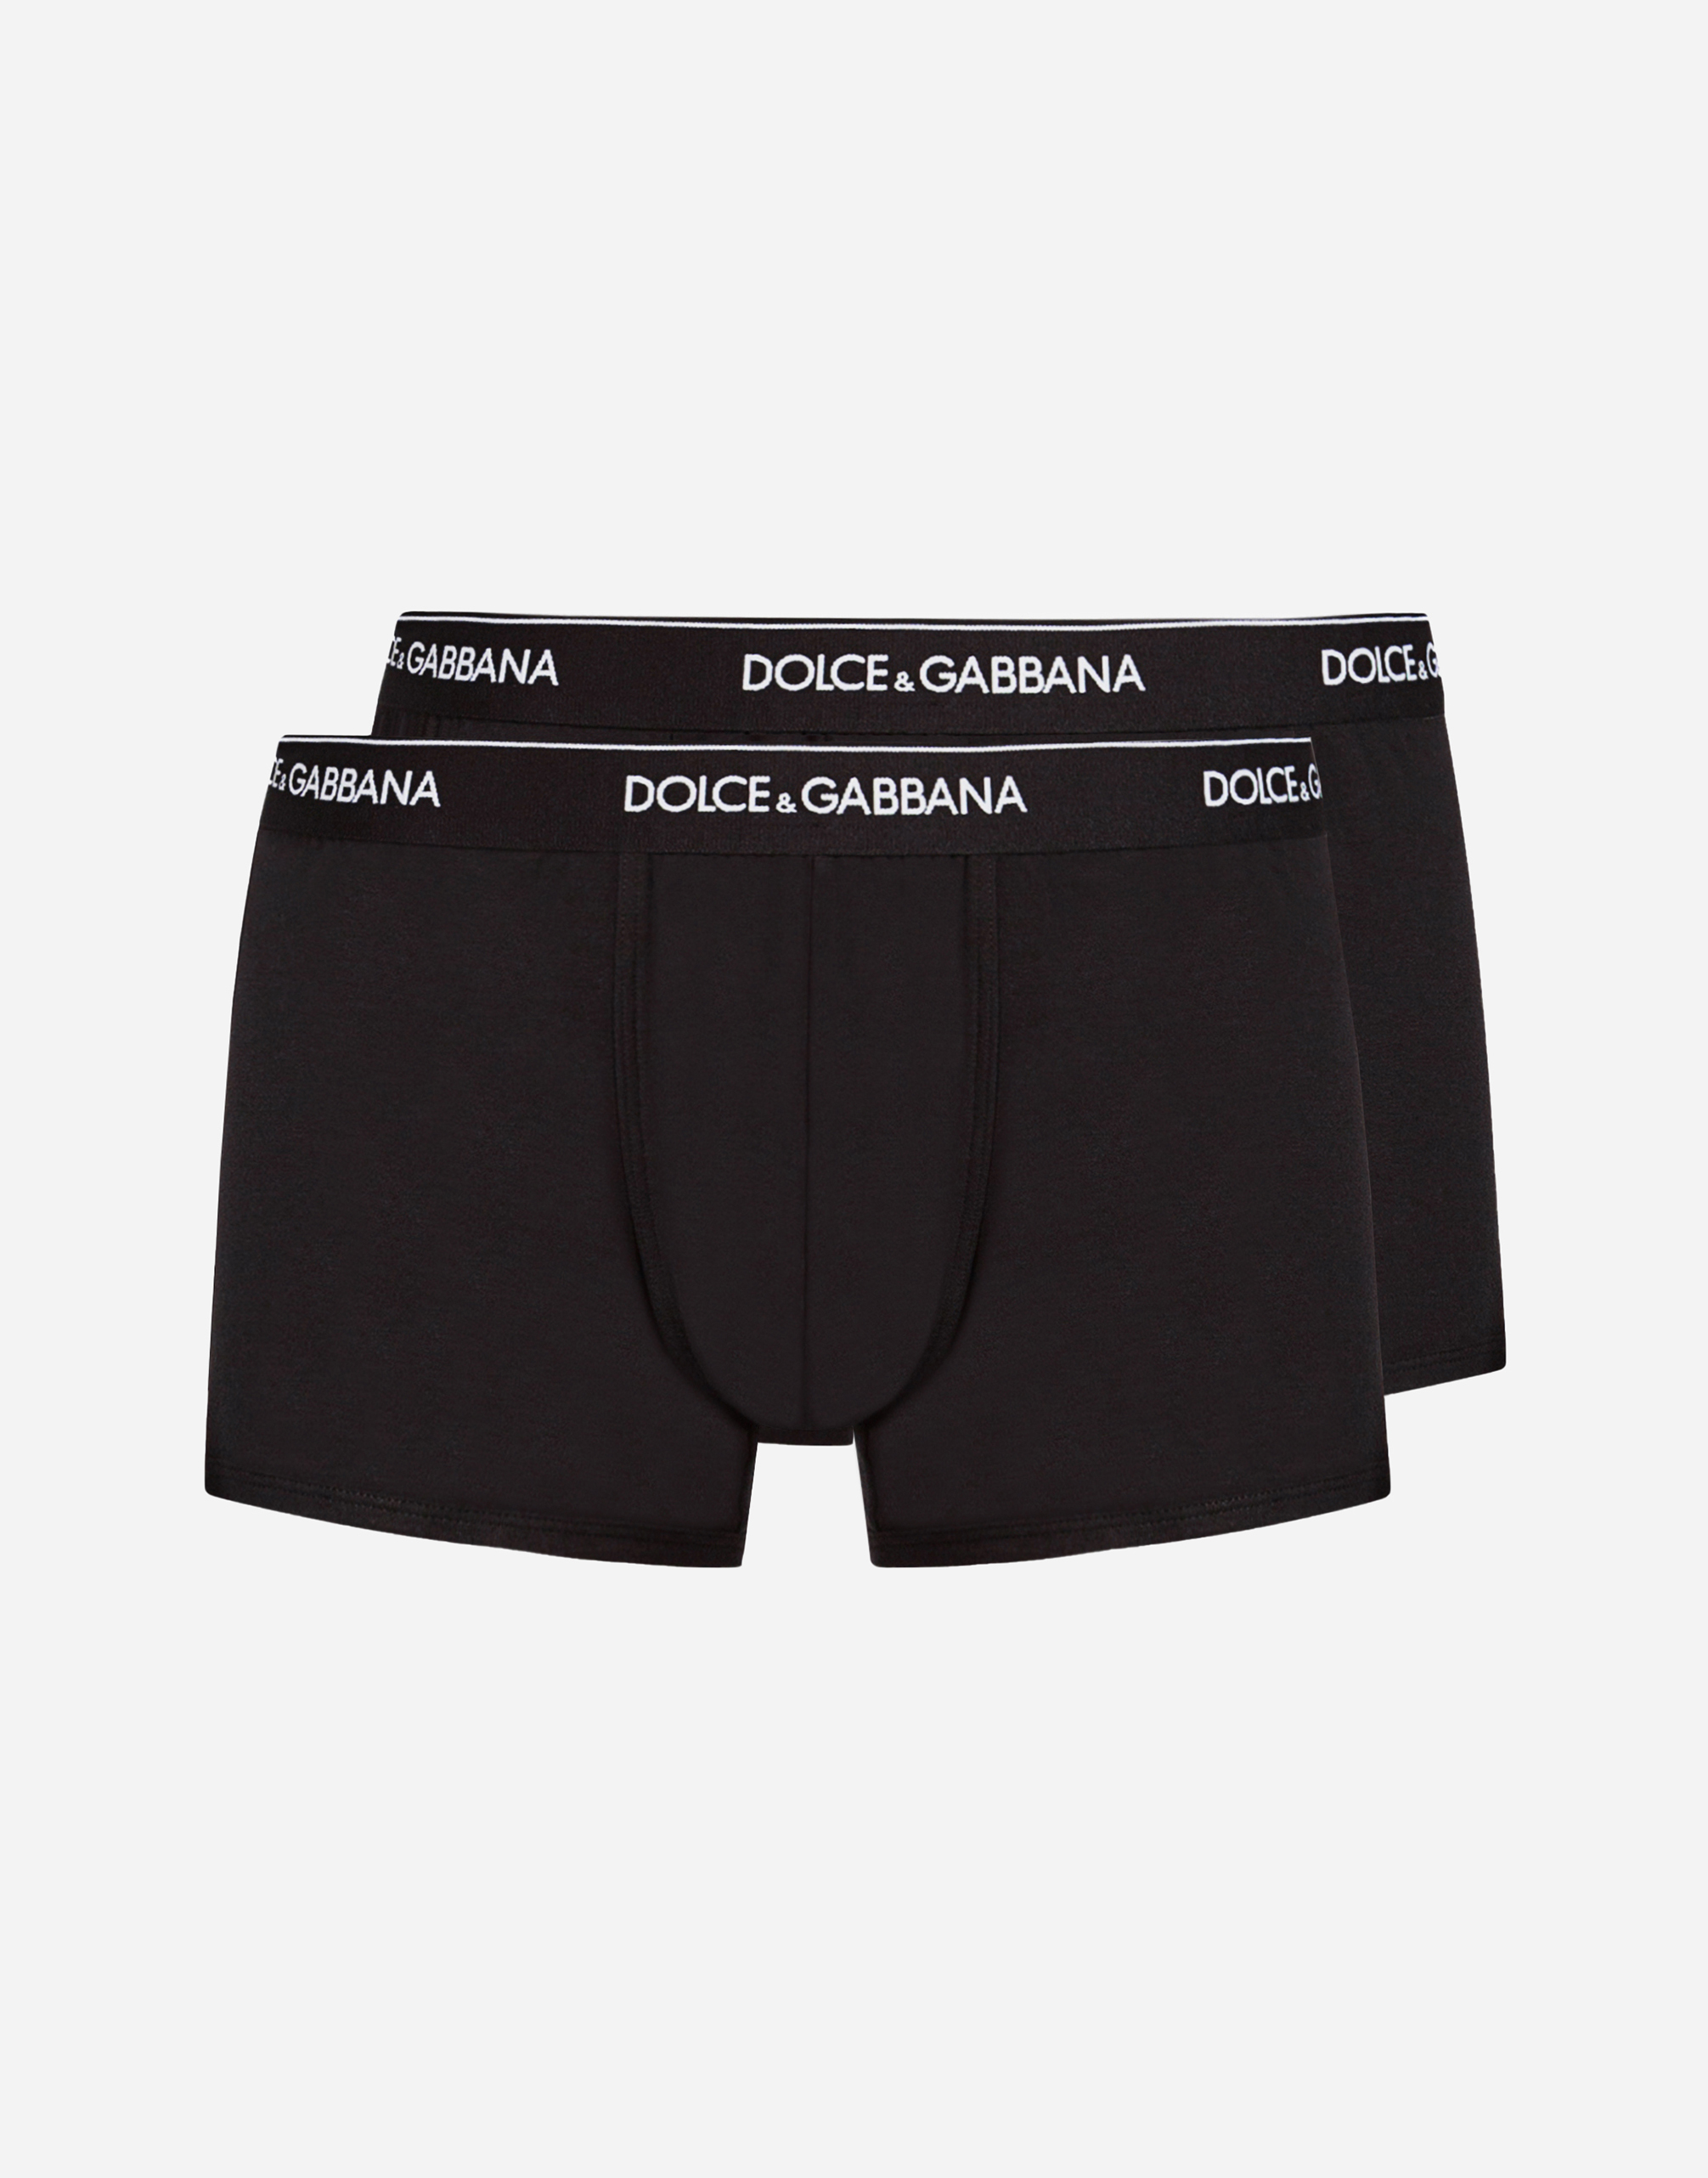 Boxer de bain en nylon à imprimé camouflage male 2 Mode de Plage Dolce & Gabbana Garçon Vêtements Sous-vêtements Culottes & Bas Shortys 